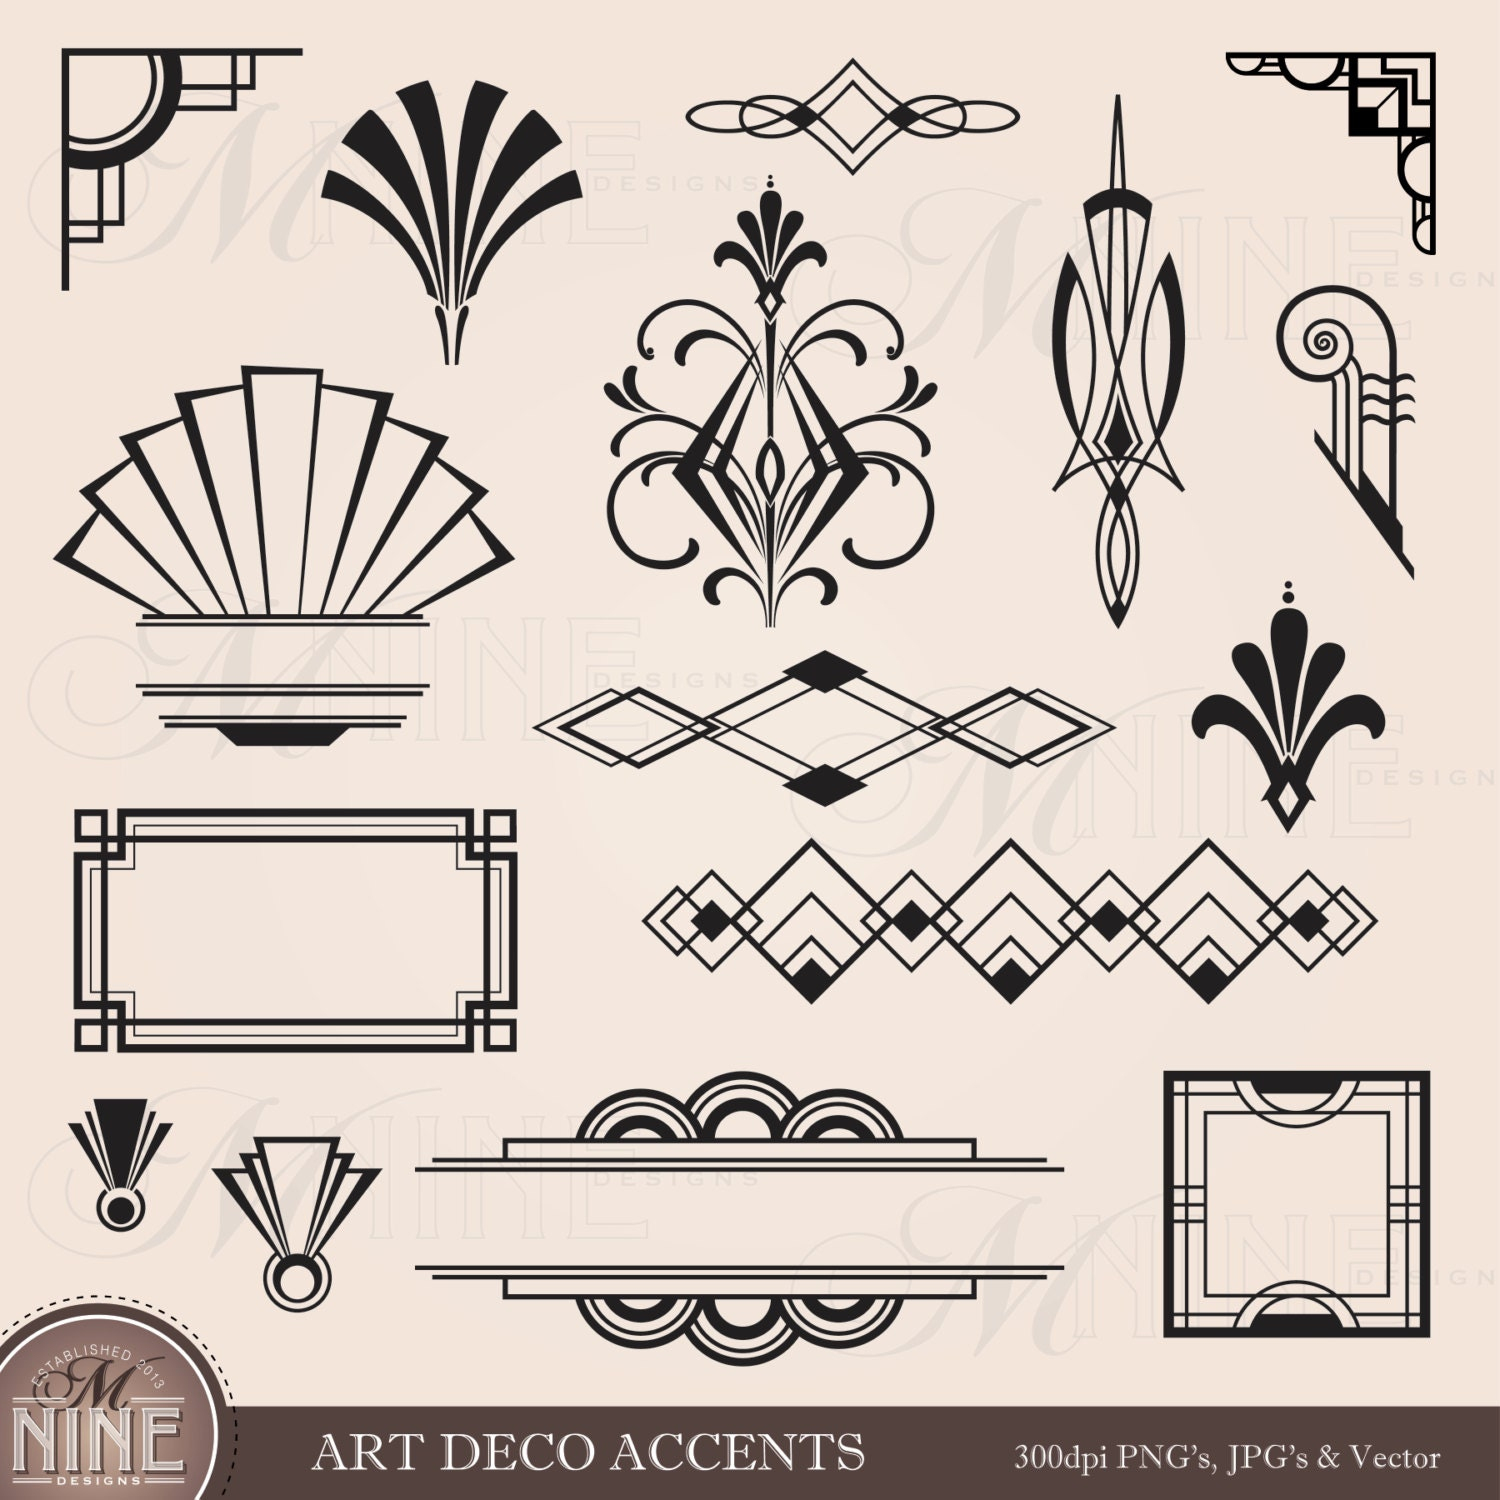 Digital Clipart Art Deco Design Elements Frames / Borders - Free Printable Art Deco Borders